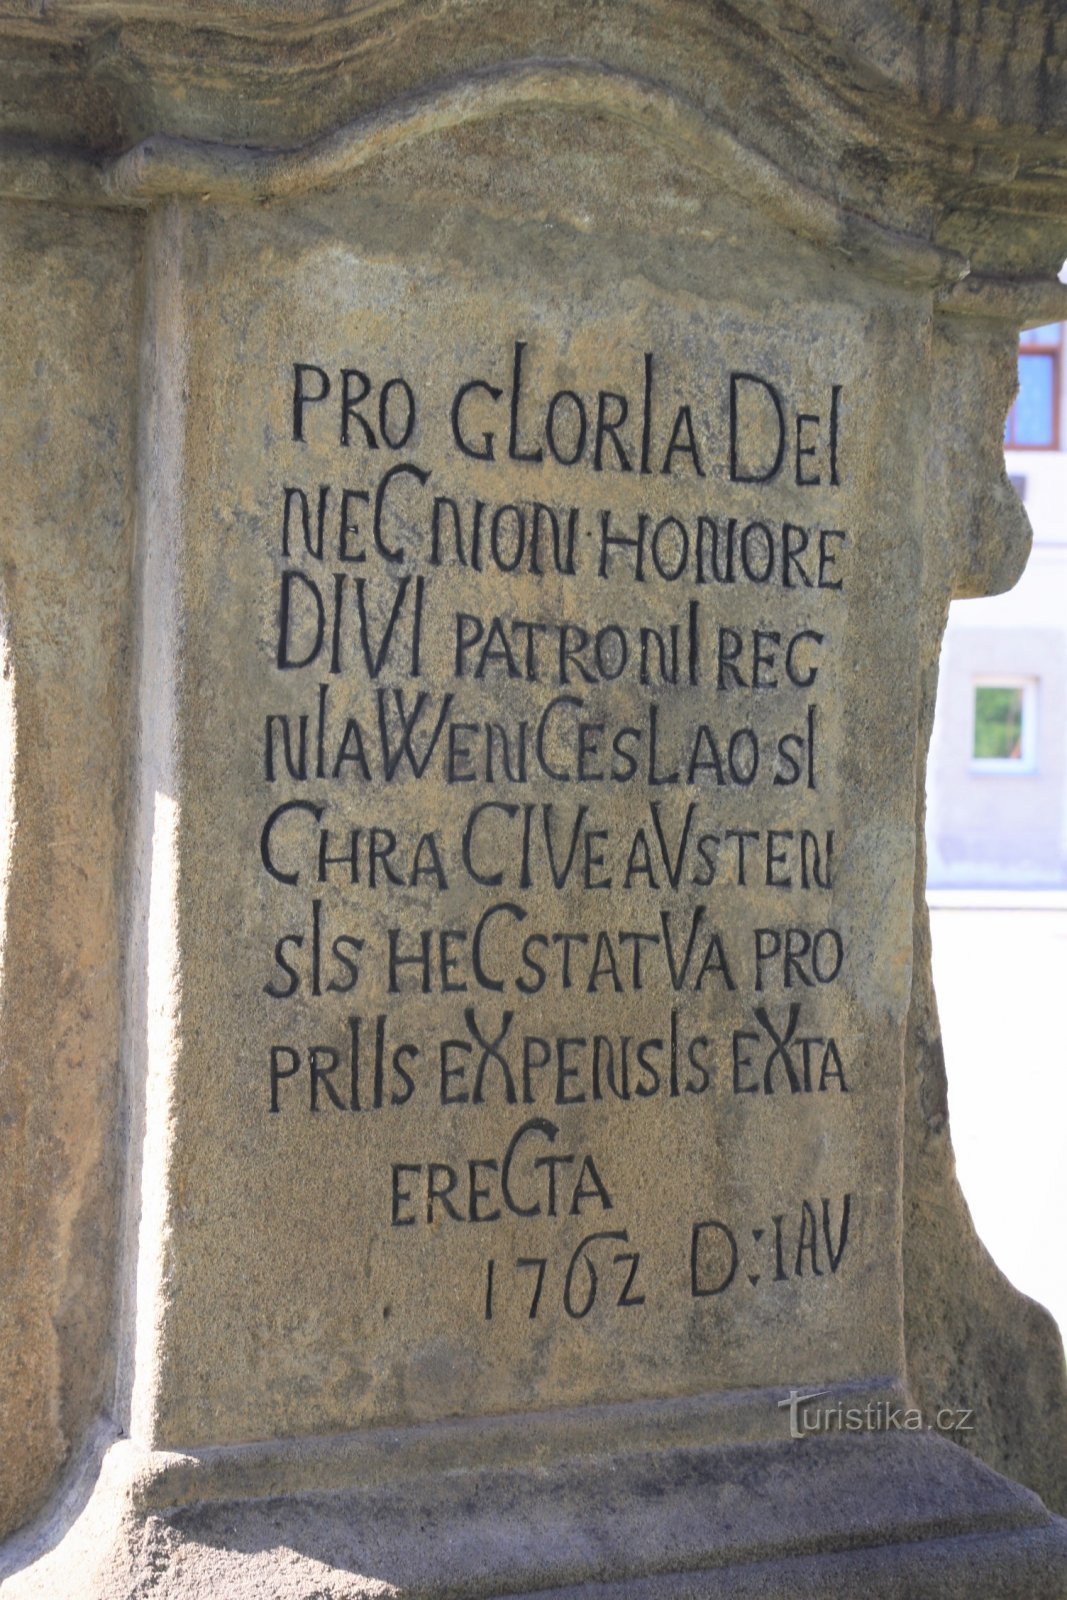 Description on plinth